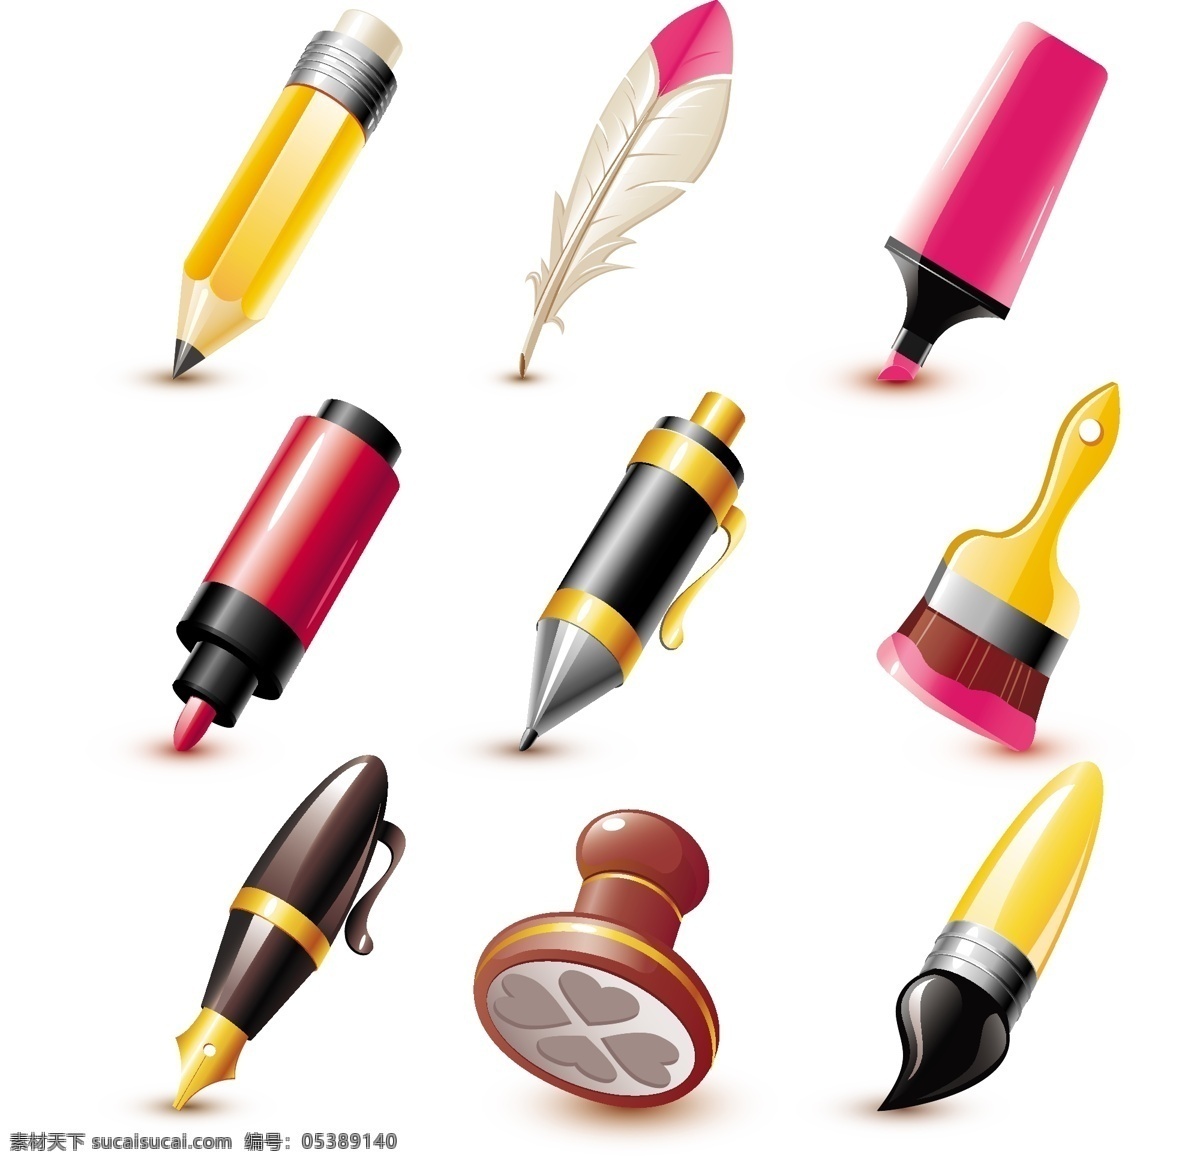 各种 钢笔 工具 矢量 笔 标记 铅笔 向量 格式 标签 书写工具 矢量图 其他矢量图